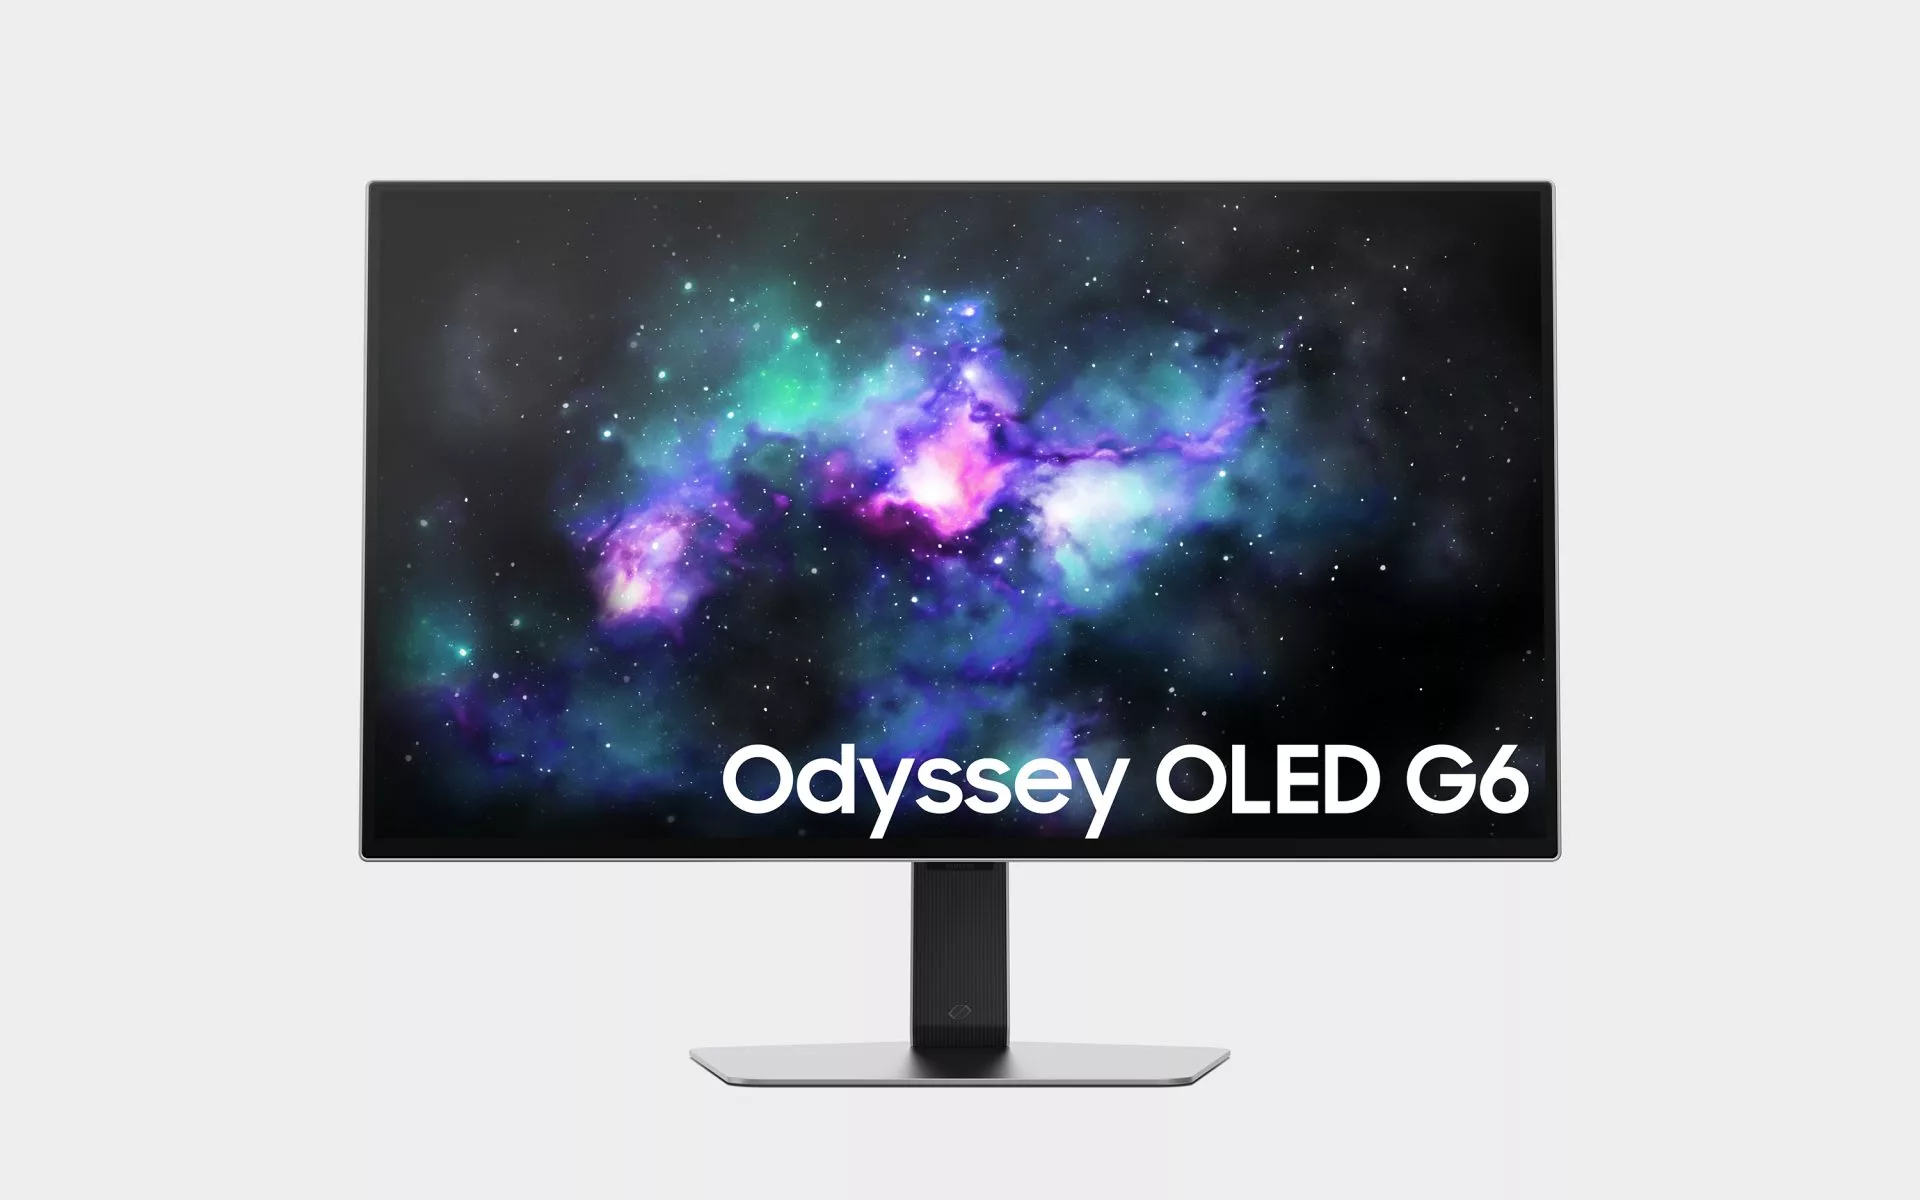  Samsung Odyssey OLED G6